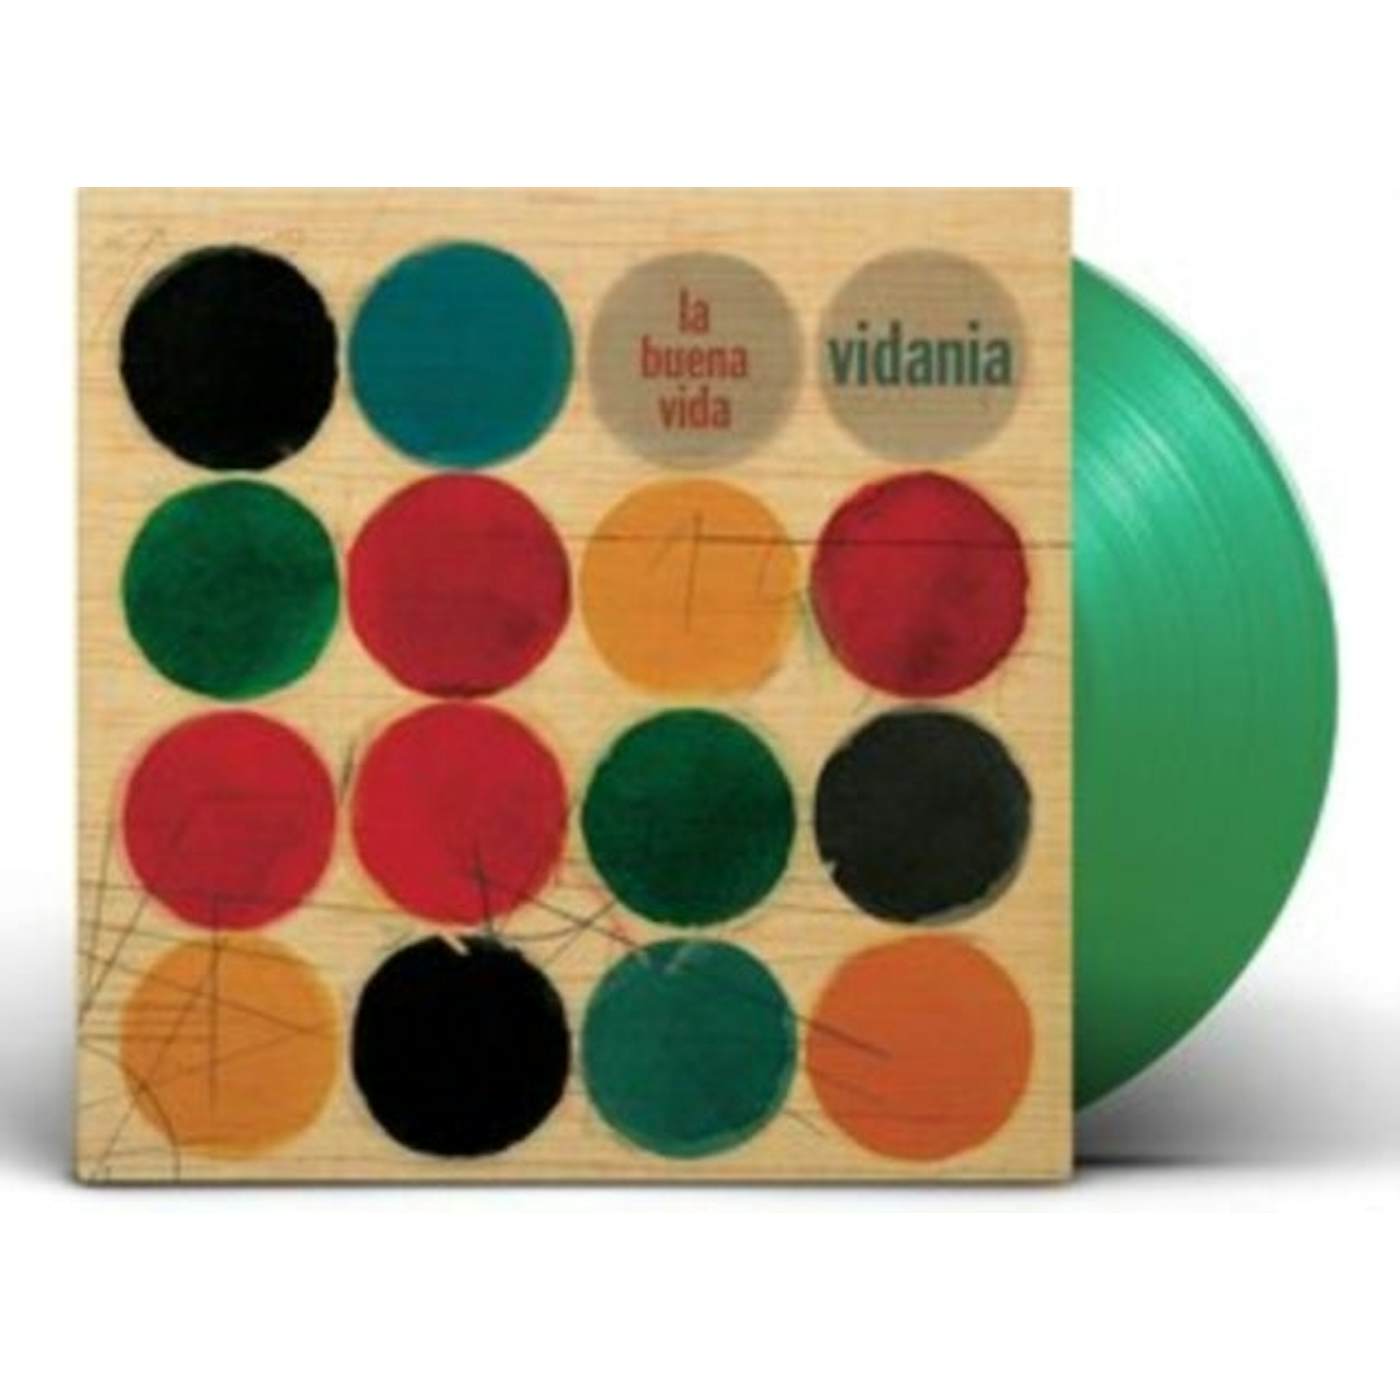 La Buena Vida LP Vinyl Record - Vidania (Green Vinyl)